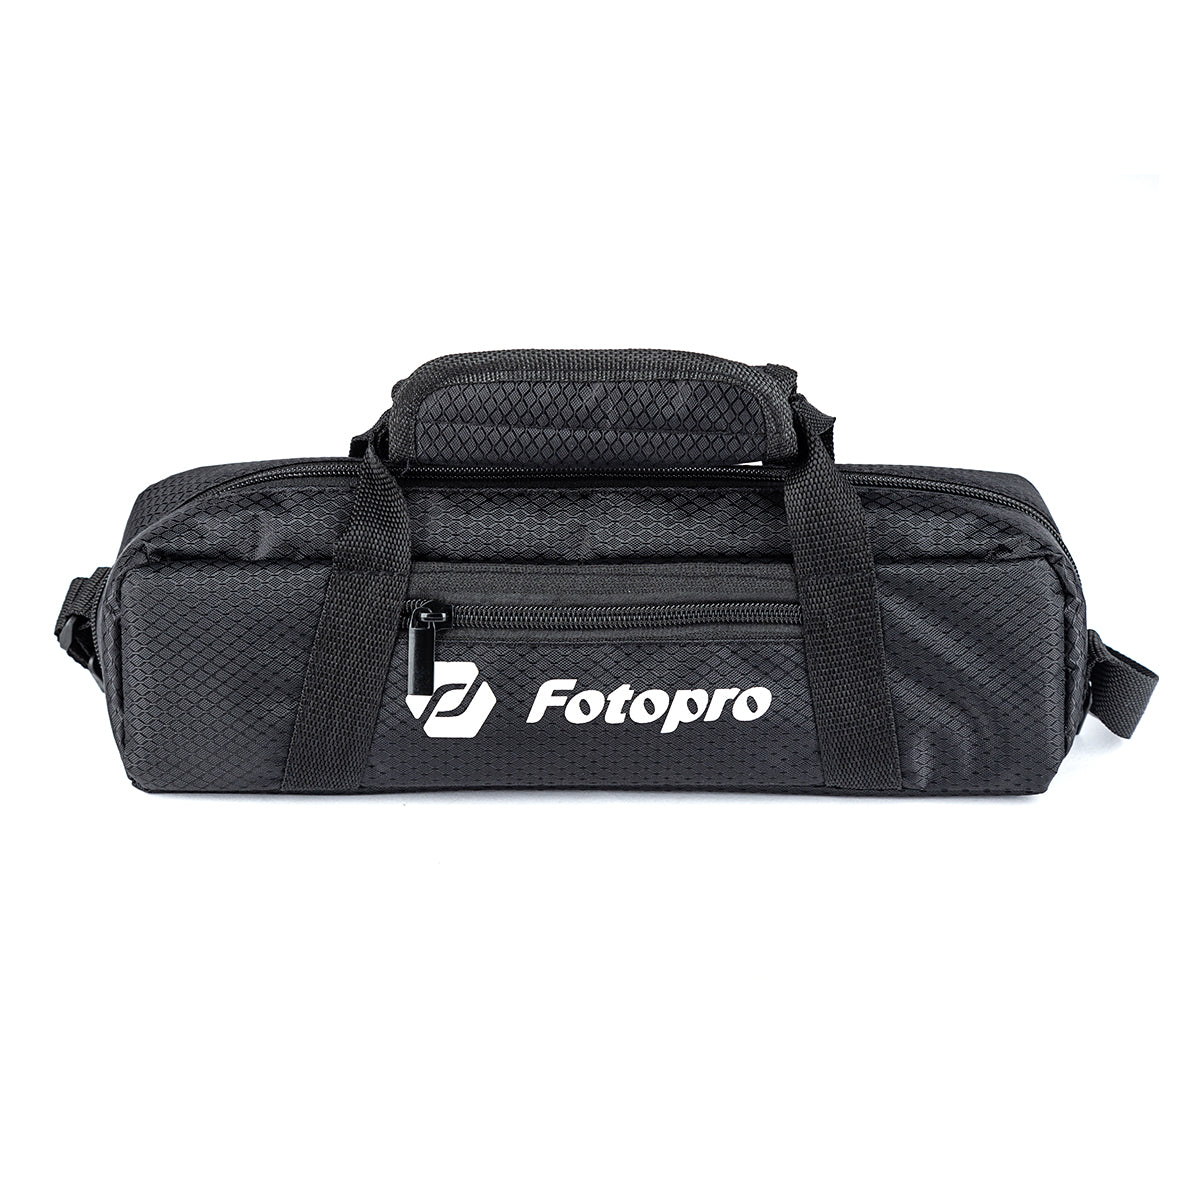 Fotopro & JOY FY-888C Carbon fiber compact portable camera tripod